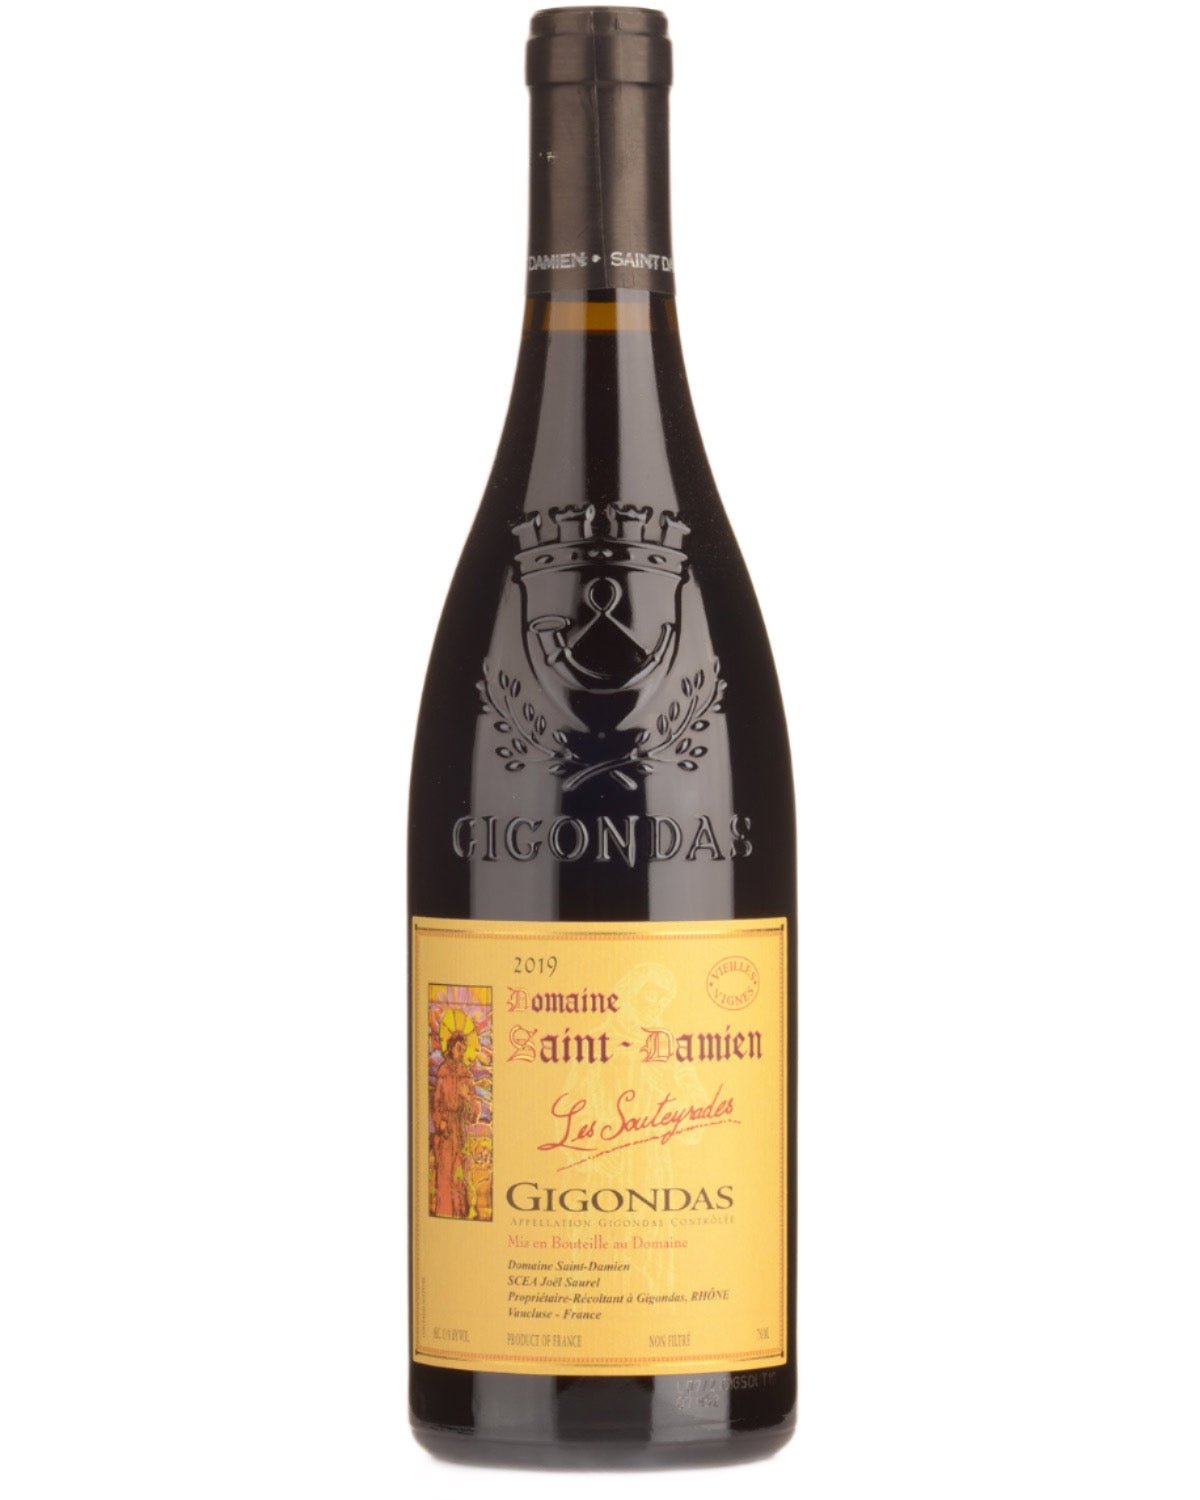 Domaine Saint Damien Gigondas 'Les Souteyrades Vieilles Vignes' 2019 - Wine France Red - Liquor Wine Cave